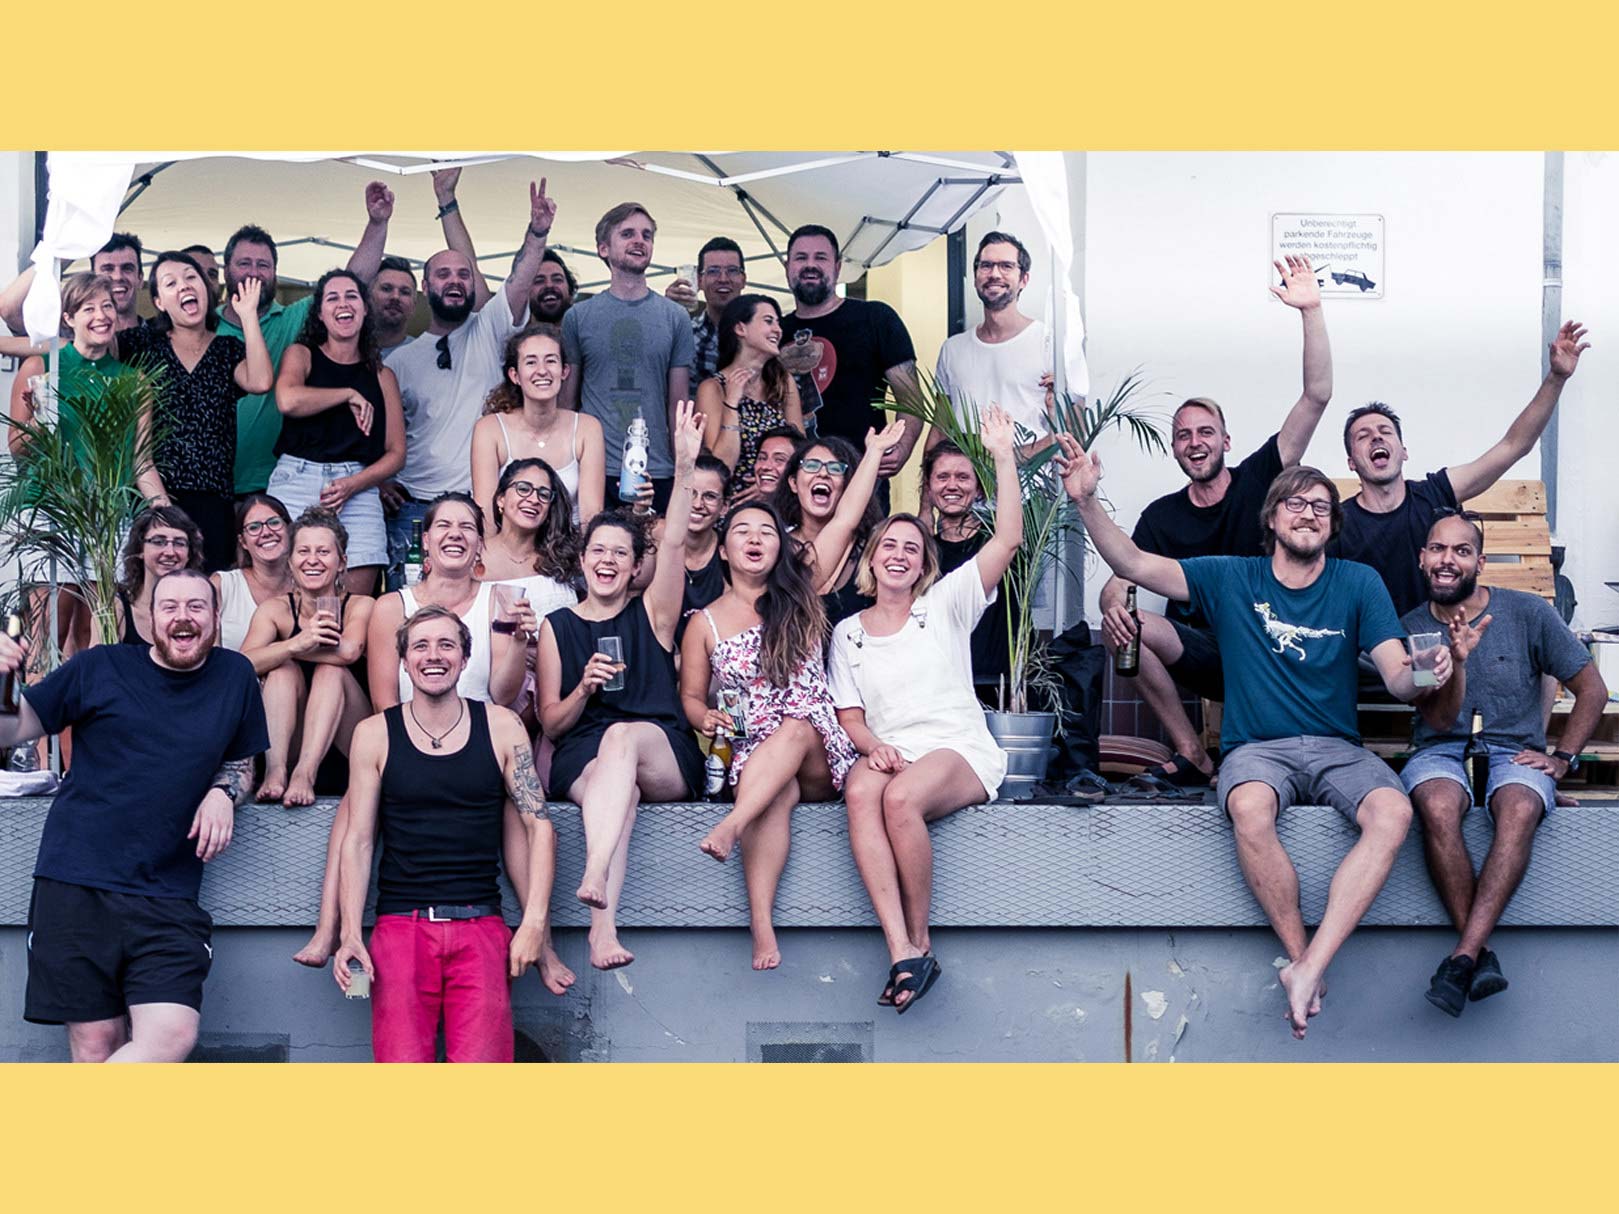 Das Bild zeigt ein Teamfoto von soulbottles, auf dem die Mitarbeitenden fröhlich in die Kamera lachen und ihre Arme in die Luft strecken.